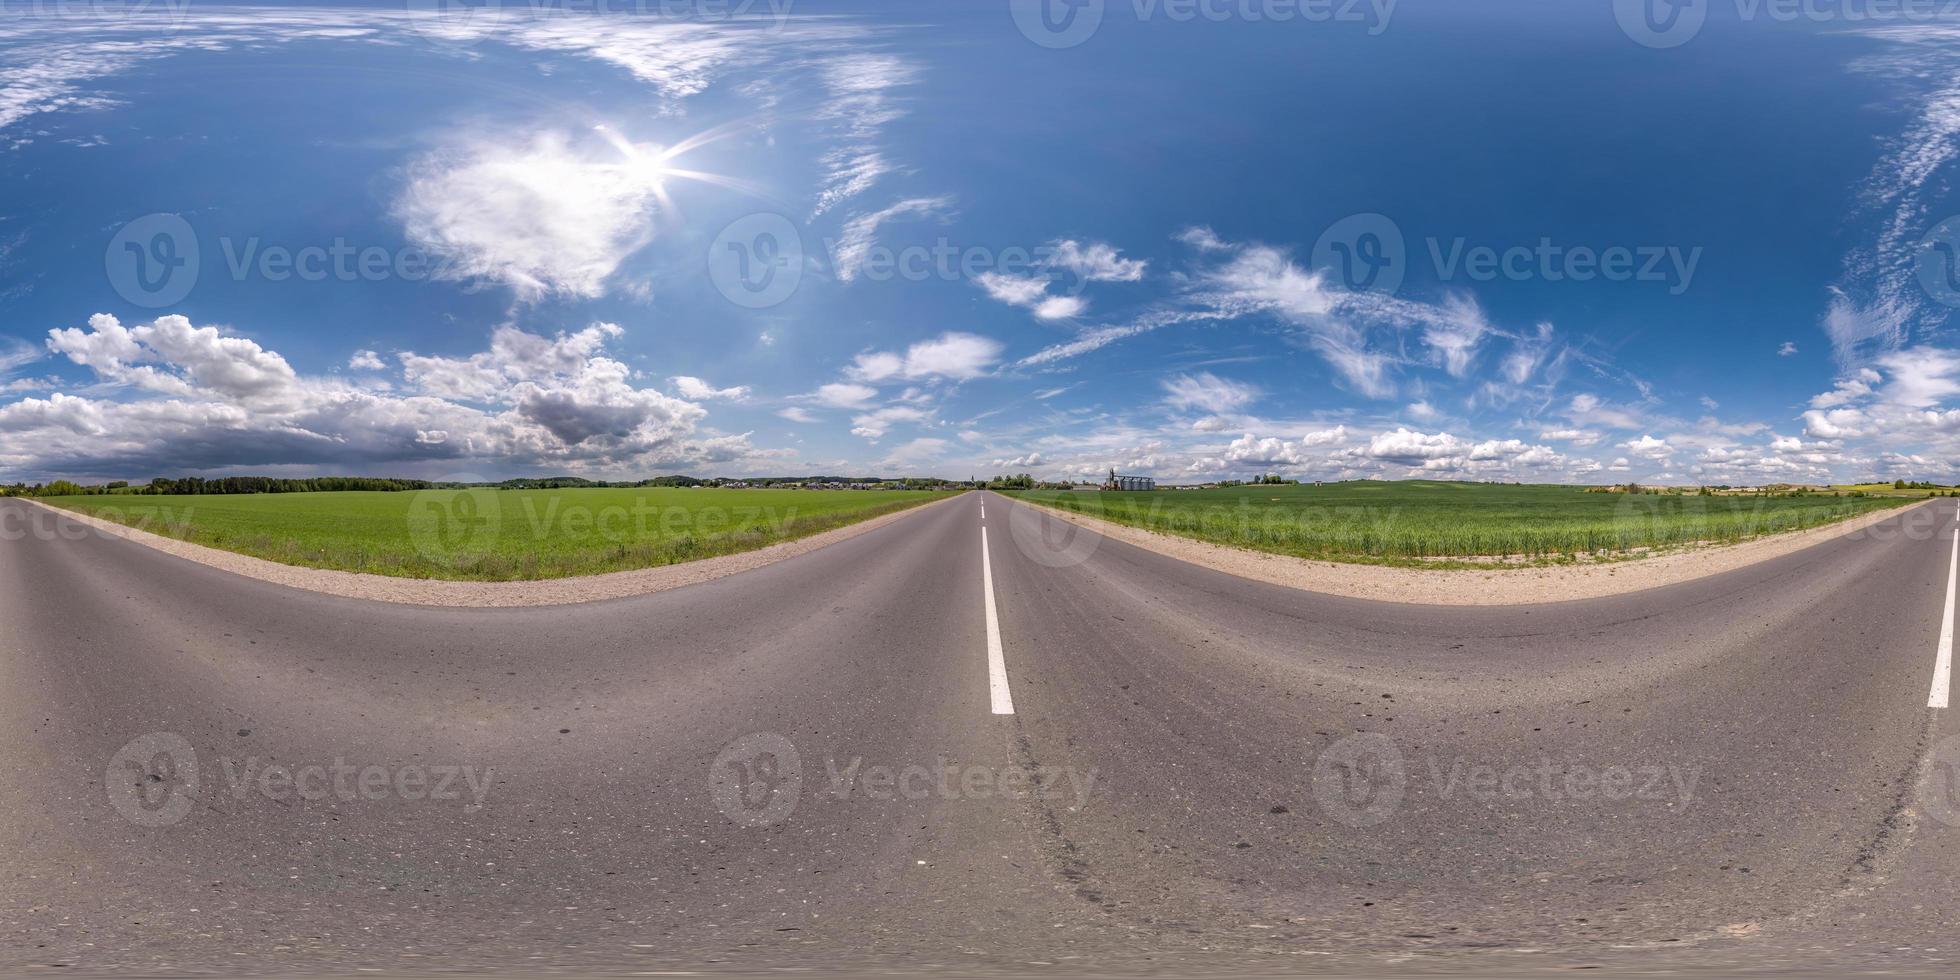 volledig bolvormig naadloos hdri-panorama 360 graden hoekzicht op asfaltweg zonder verkeer tussen velden met heldere blauwe lucht in equirectangular projectie, vr ar-inhoud foto